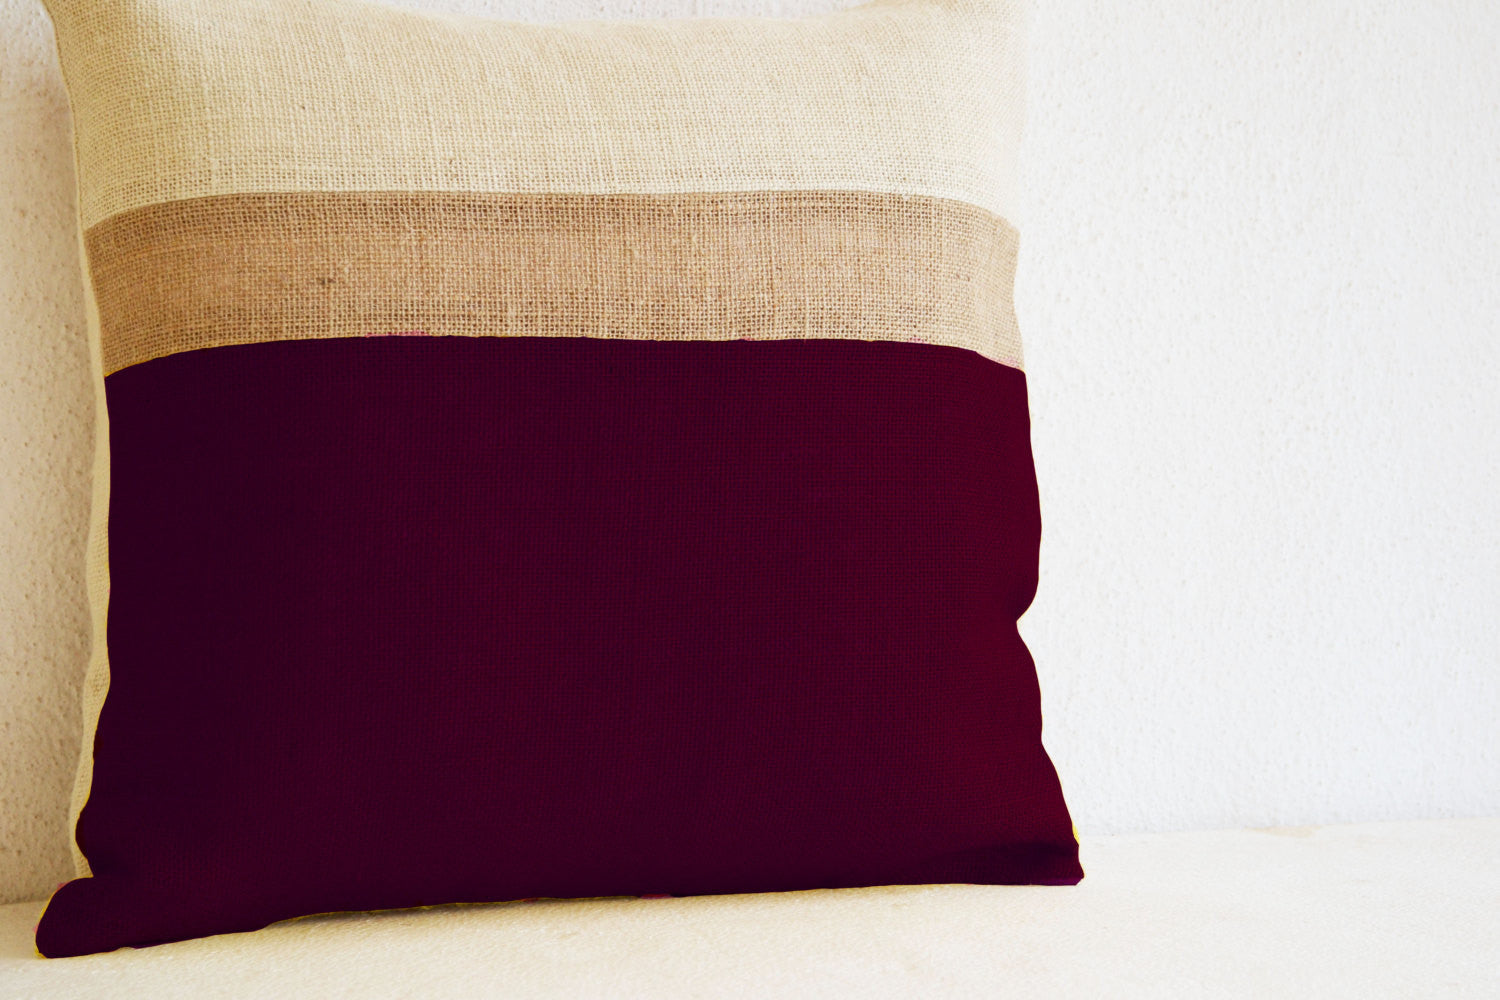 Handmade burgundy pillow covers in burlap